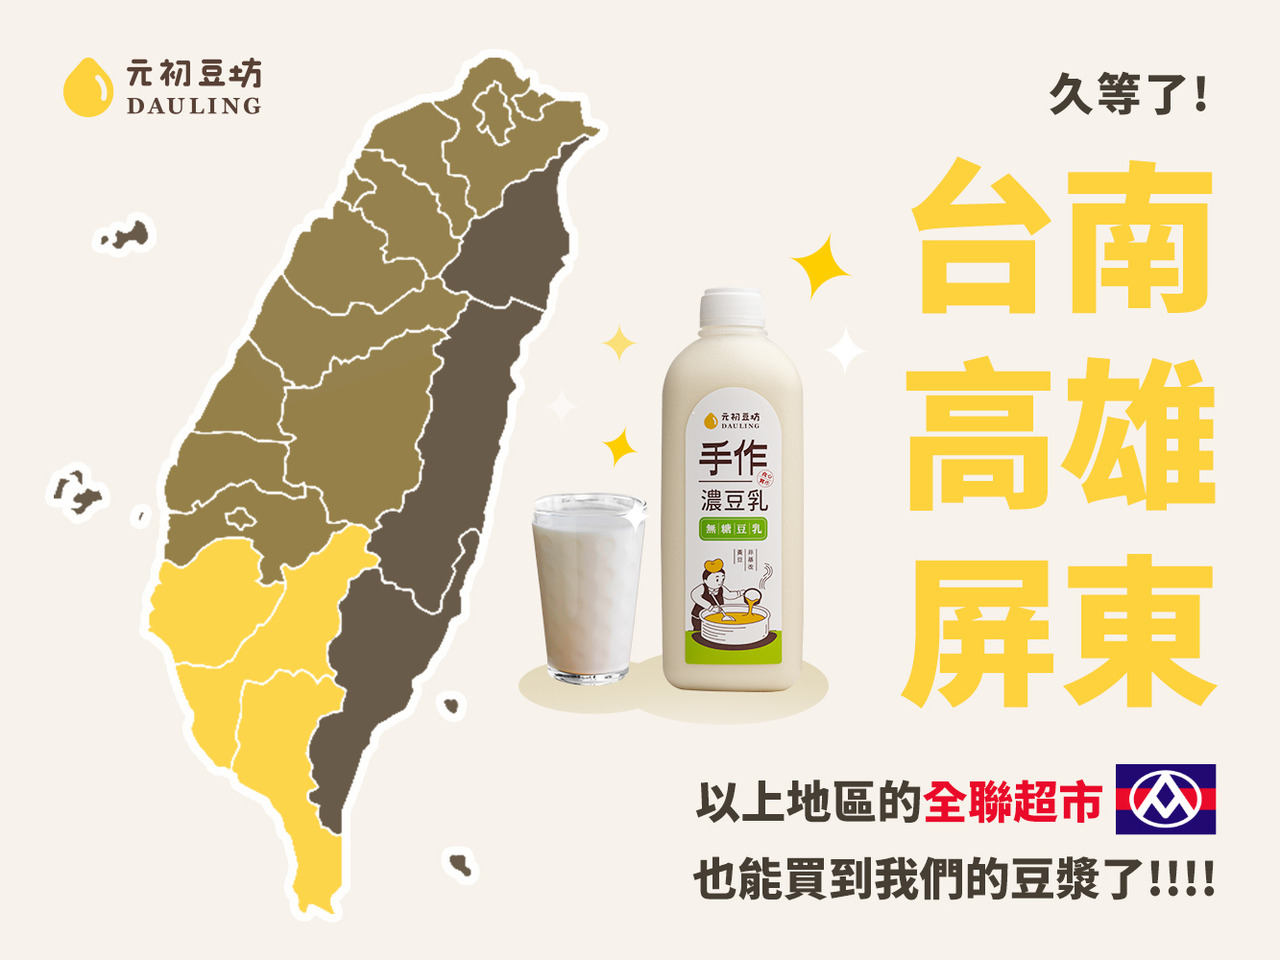 別忘了我們除了豆奶茶以外，還有無糖豆漿在架上～  最新的消息是，現在在台南、高雄、屏東也可以買到「 元初無糖豆漿 」囉！